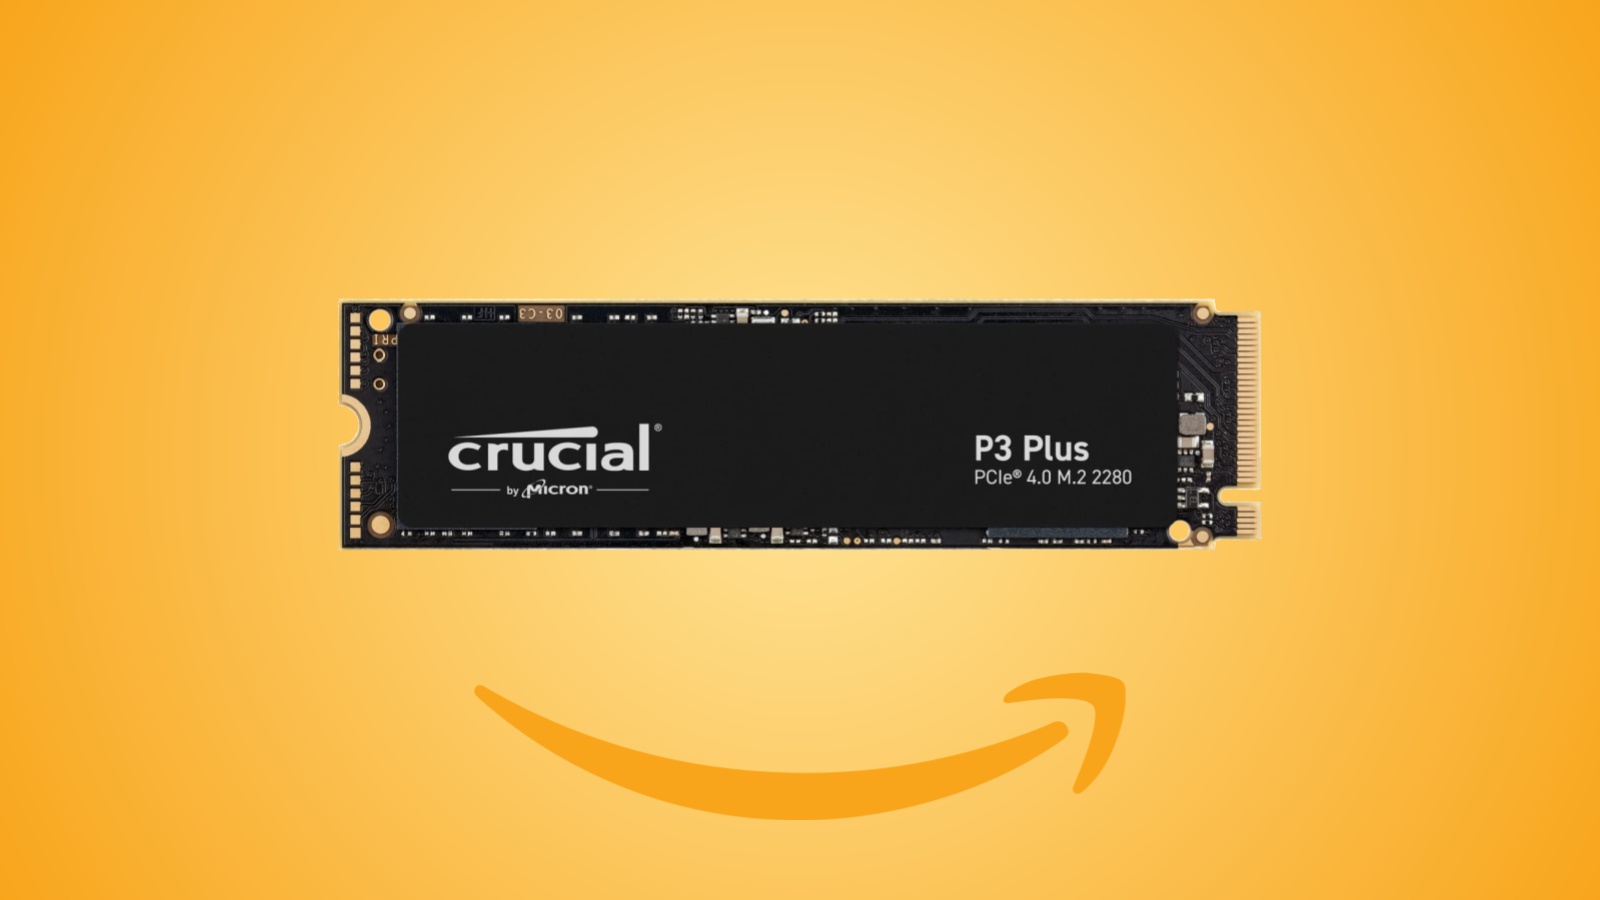 Offerte Amazon: l'SSD Crucial P3 Plus da 1TB e 2TB è in sconto al prezzo minimo storico